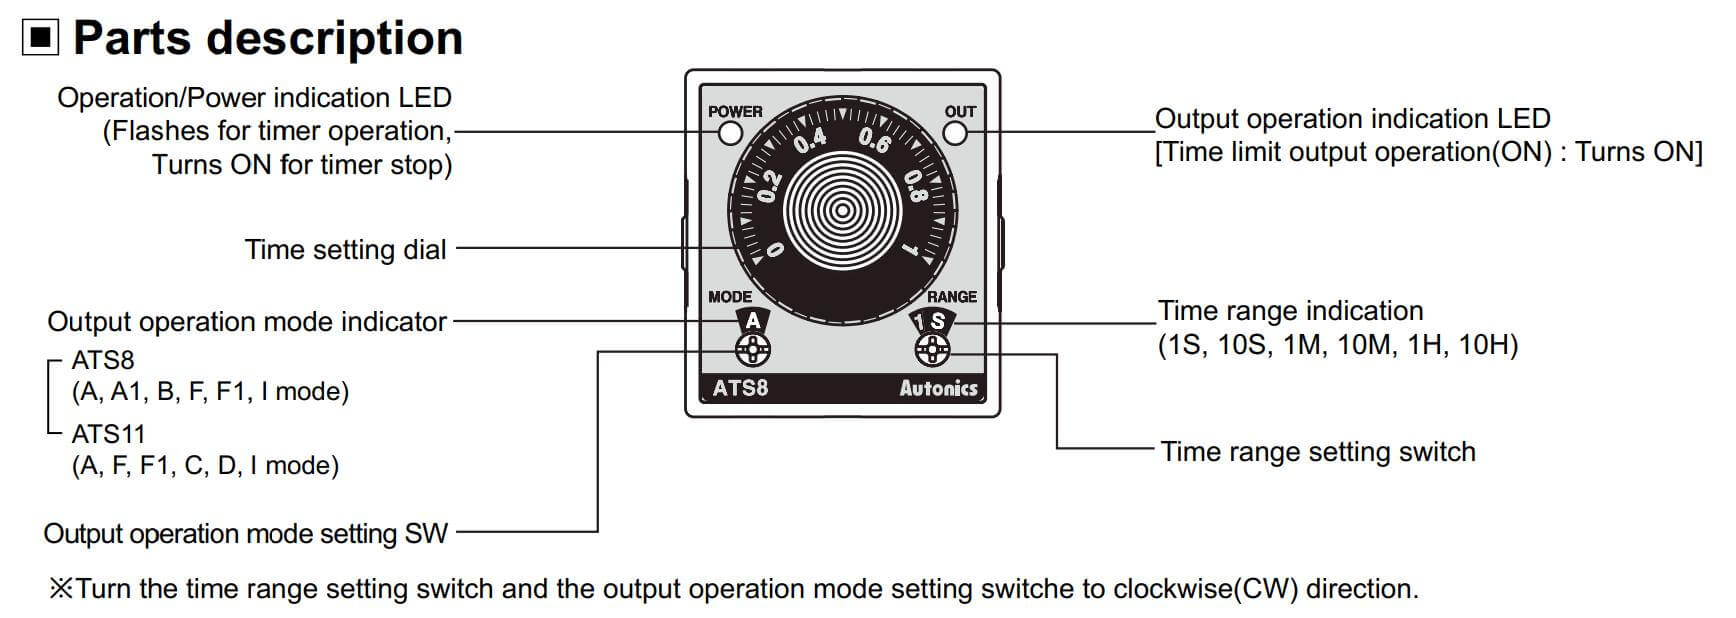 Cấu tạo và Kích thước Autonics ATS11-43D: Bộ định thời gian (Timer)